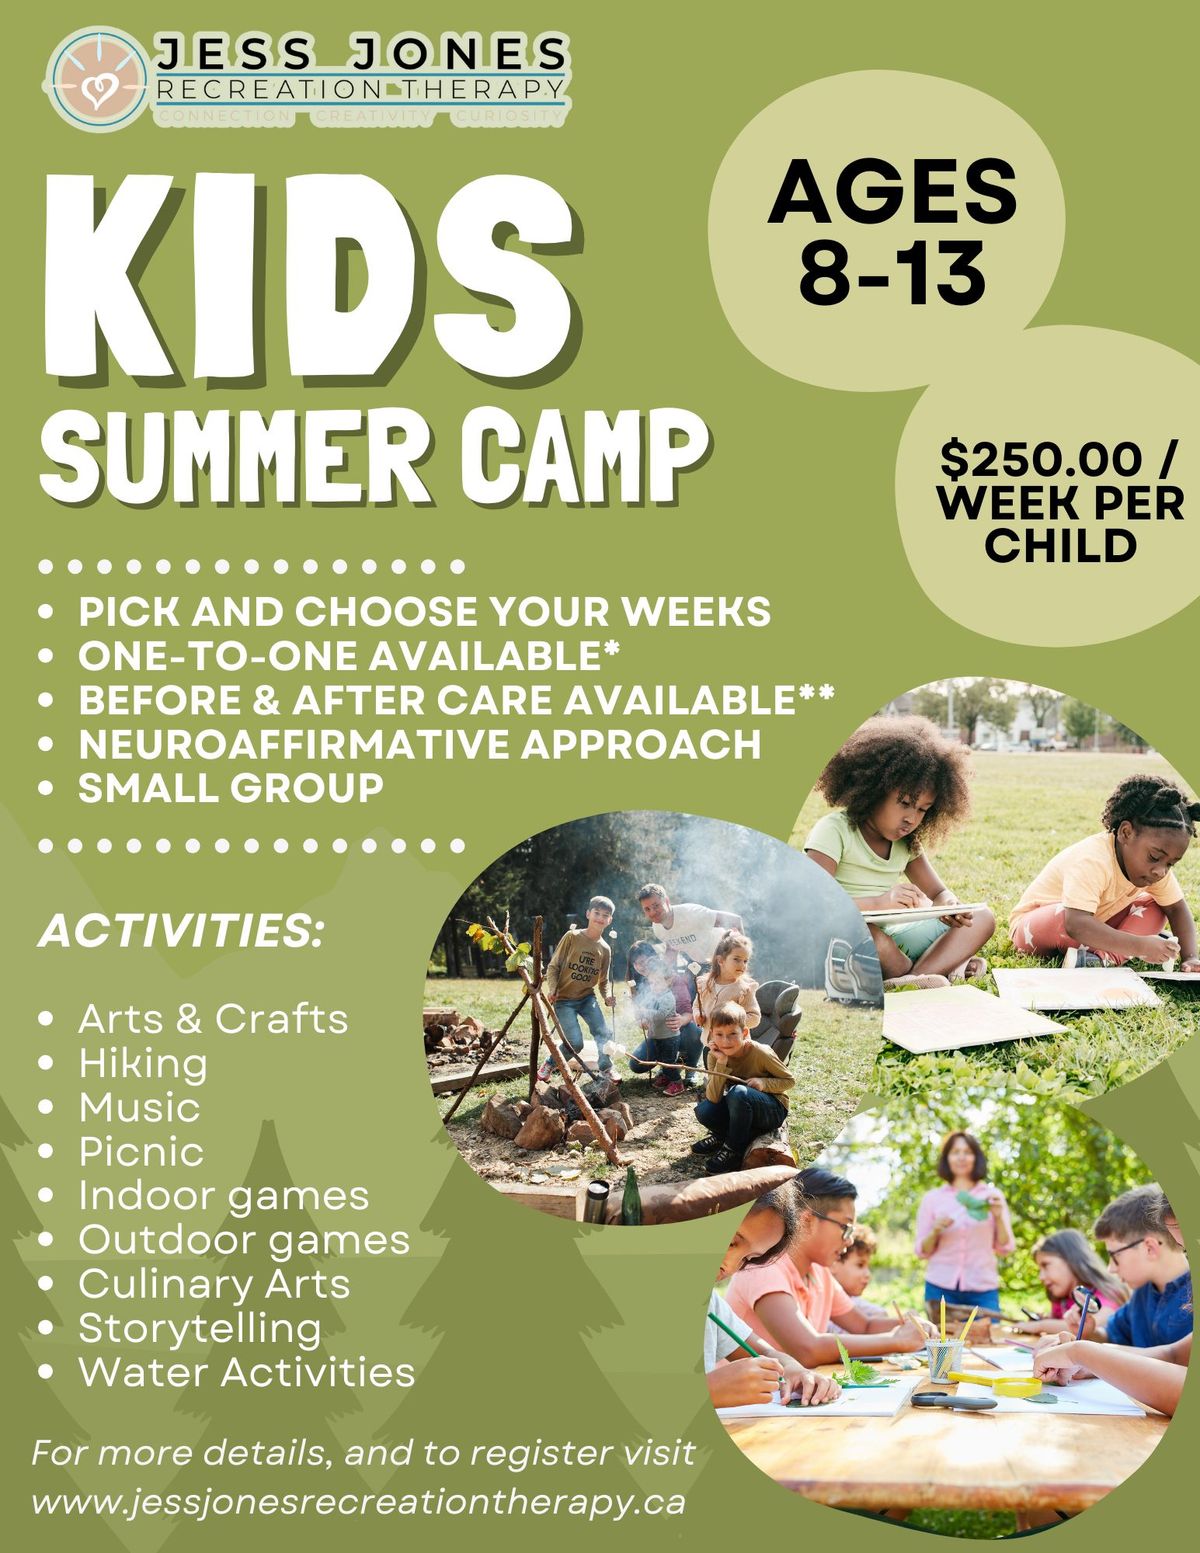 Unlock an Unforgettable Summer Adventure at Jess Jones Kids Summer Camp!